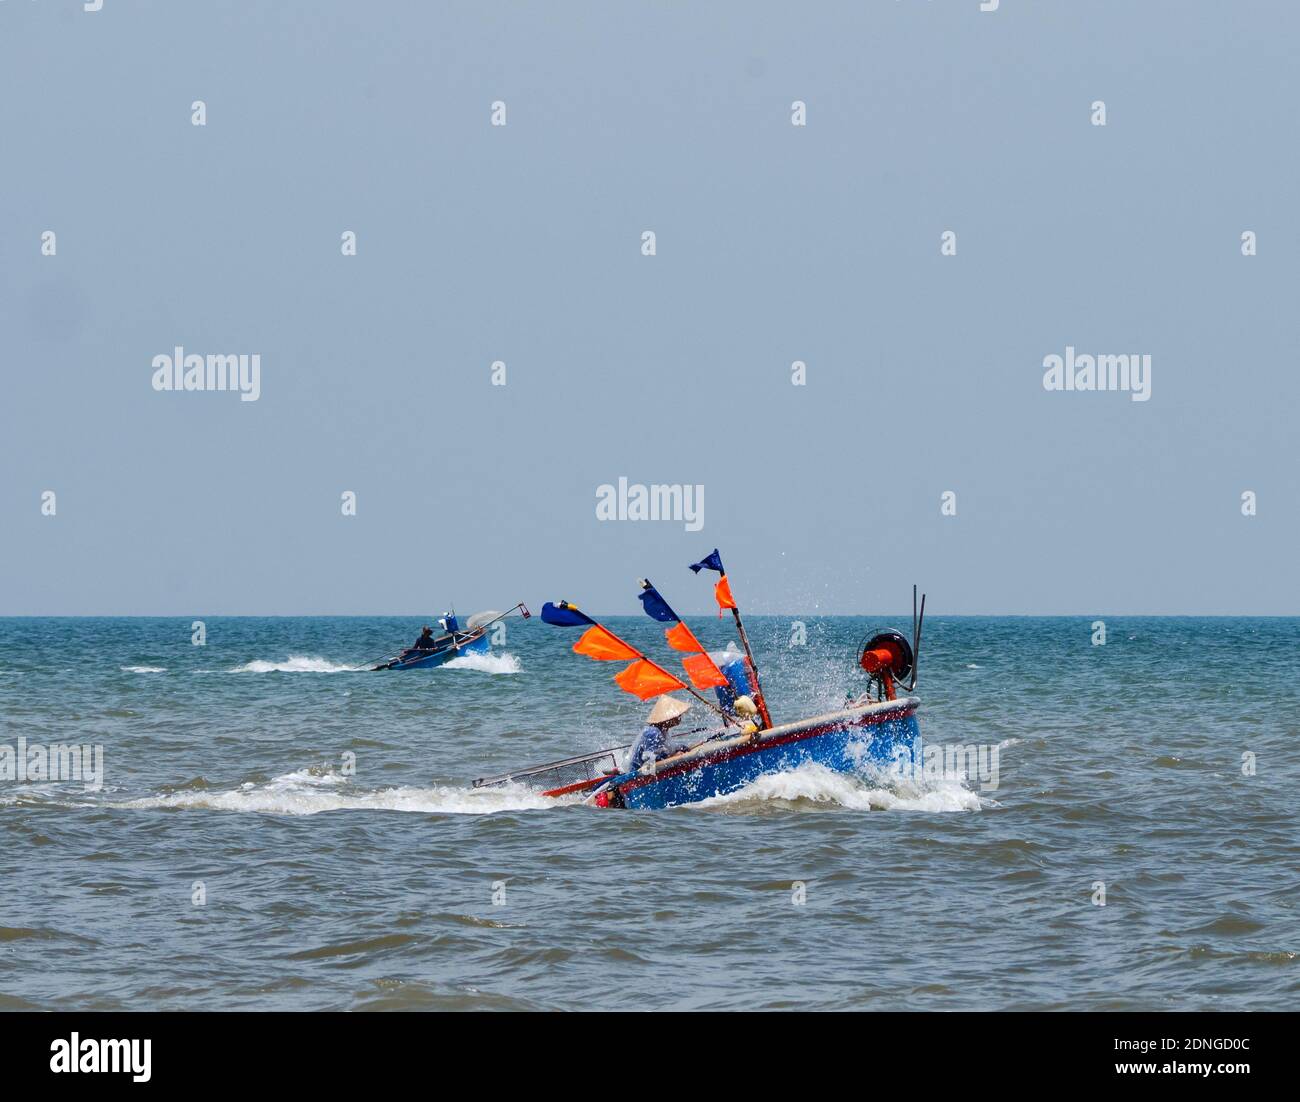 Bateaux de pêche ronds, typiques de la région, au large de la côte de la plage de Bai Sau à Vung Tau dans la province de Bang Ria-Vung Tau, au sud du Vietnam. Banque D'Images